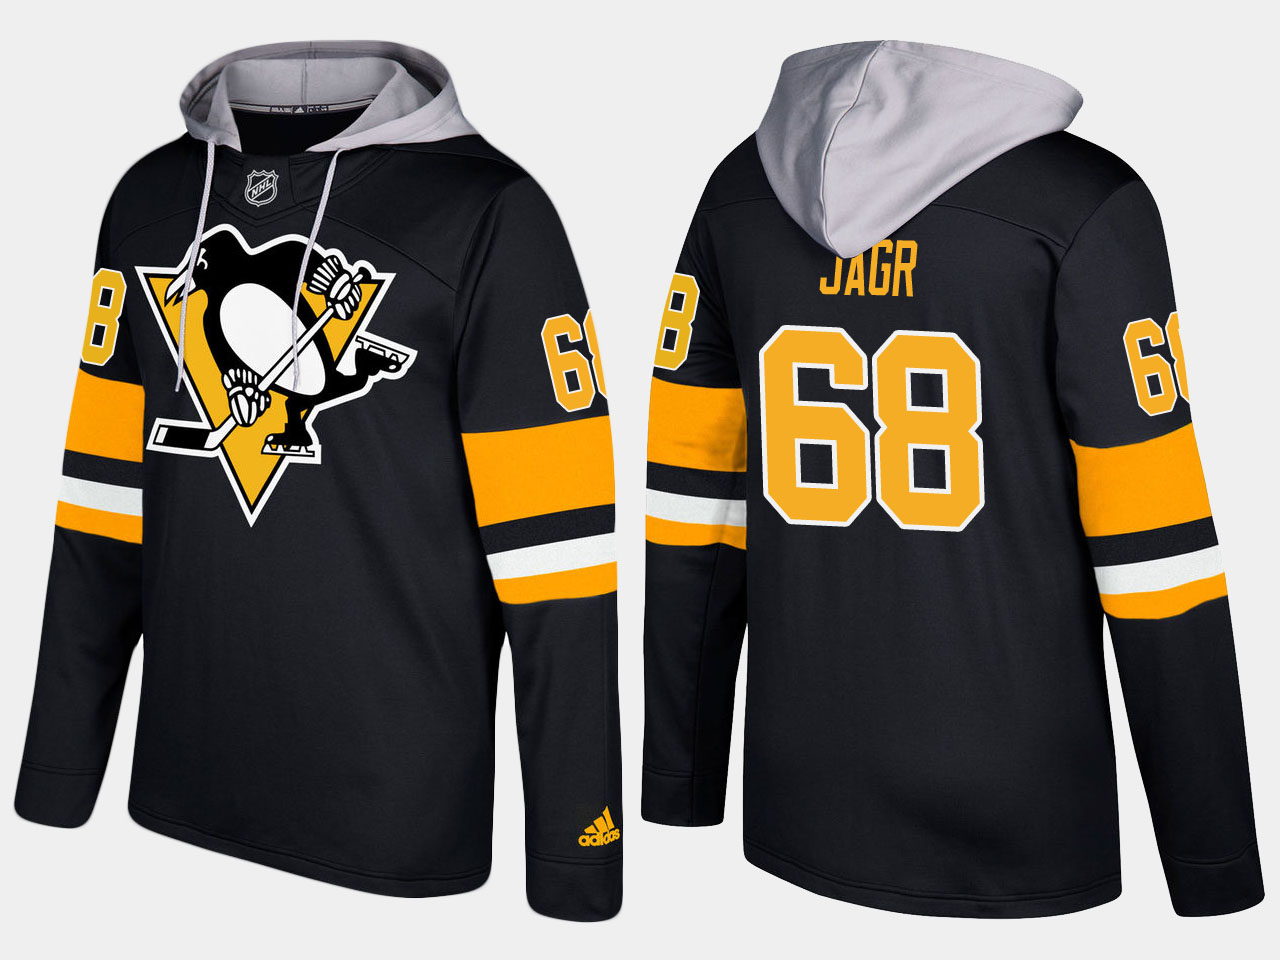 Men NHL Pittsburgh penguins retired #68 jaromir jagr black hoodie